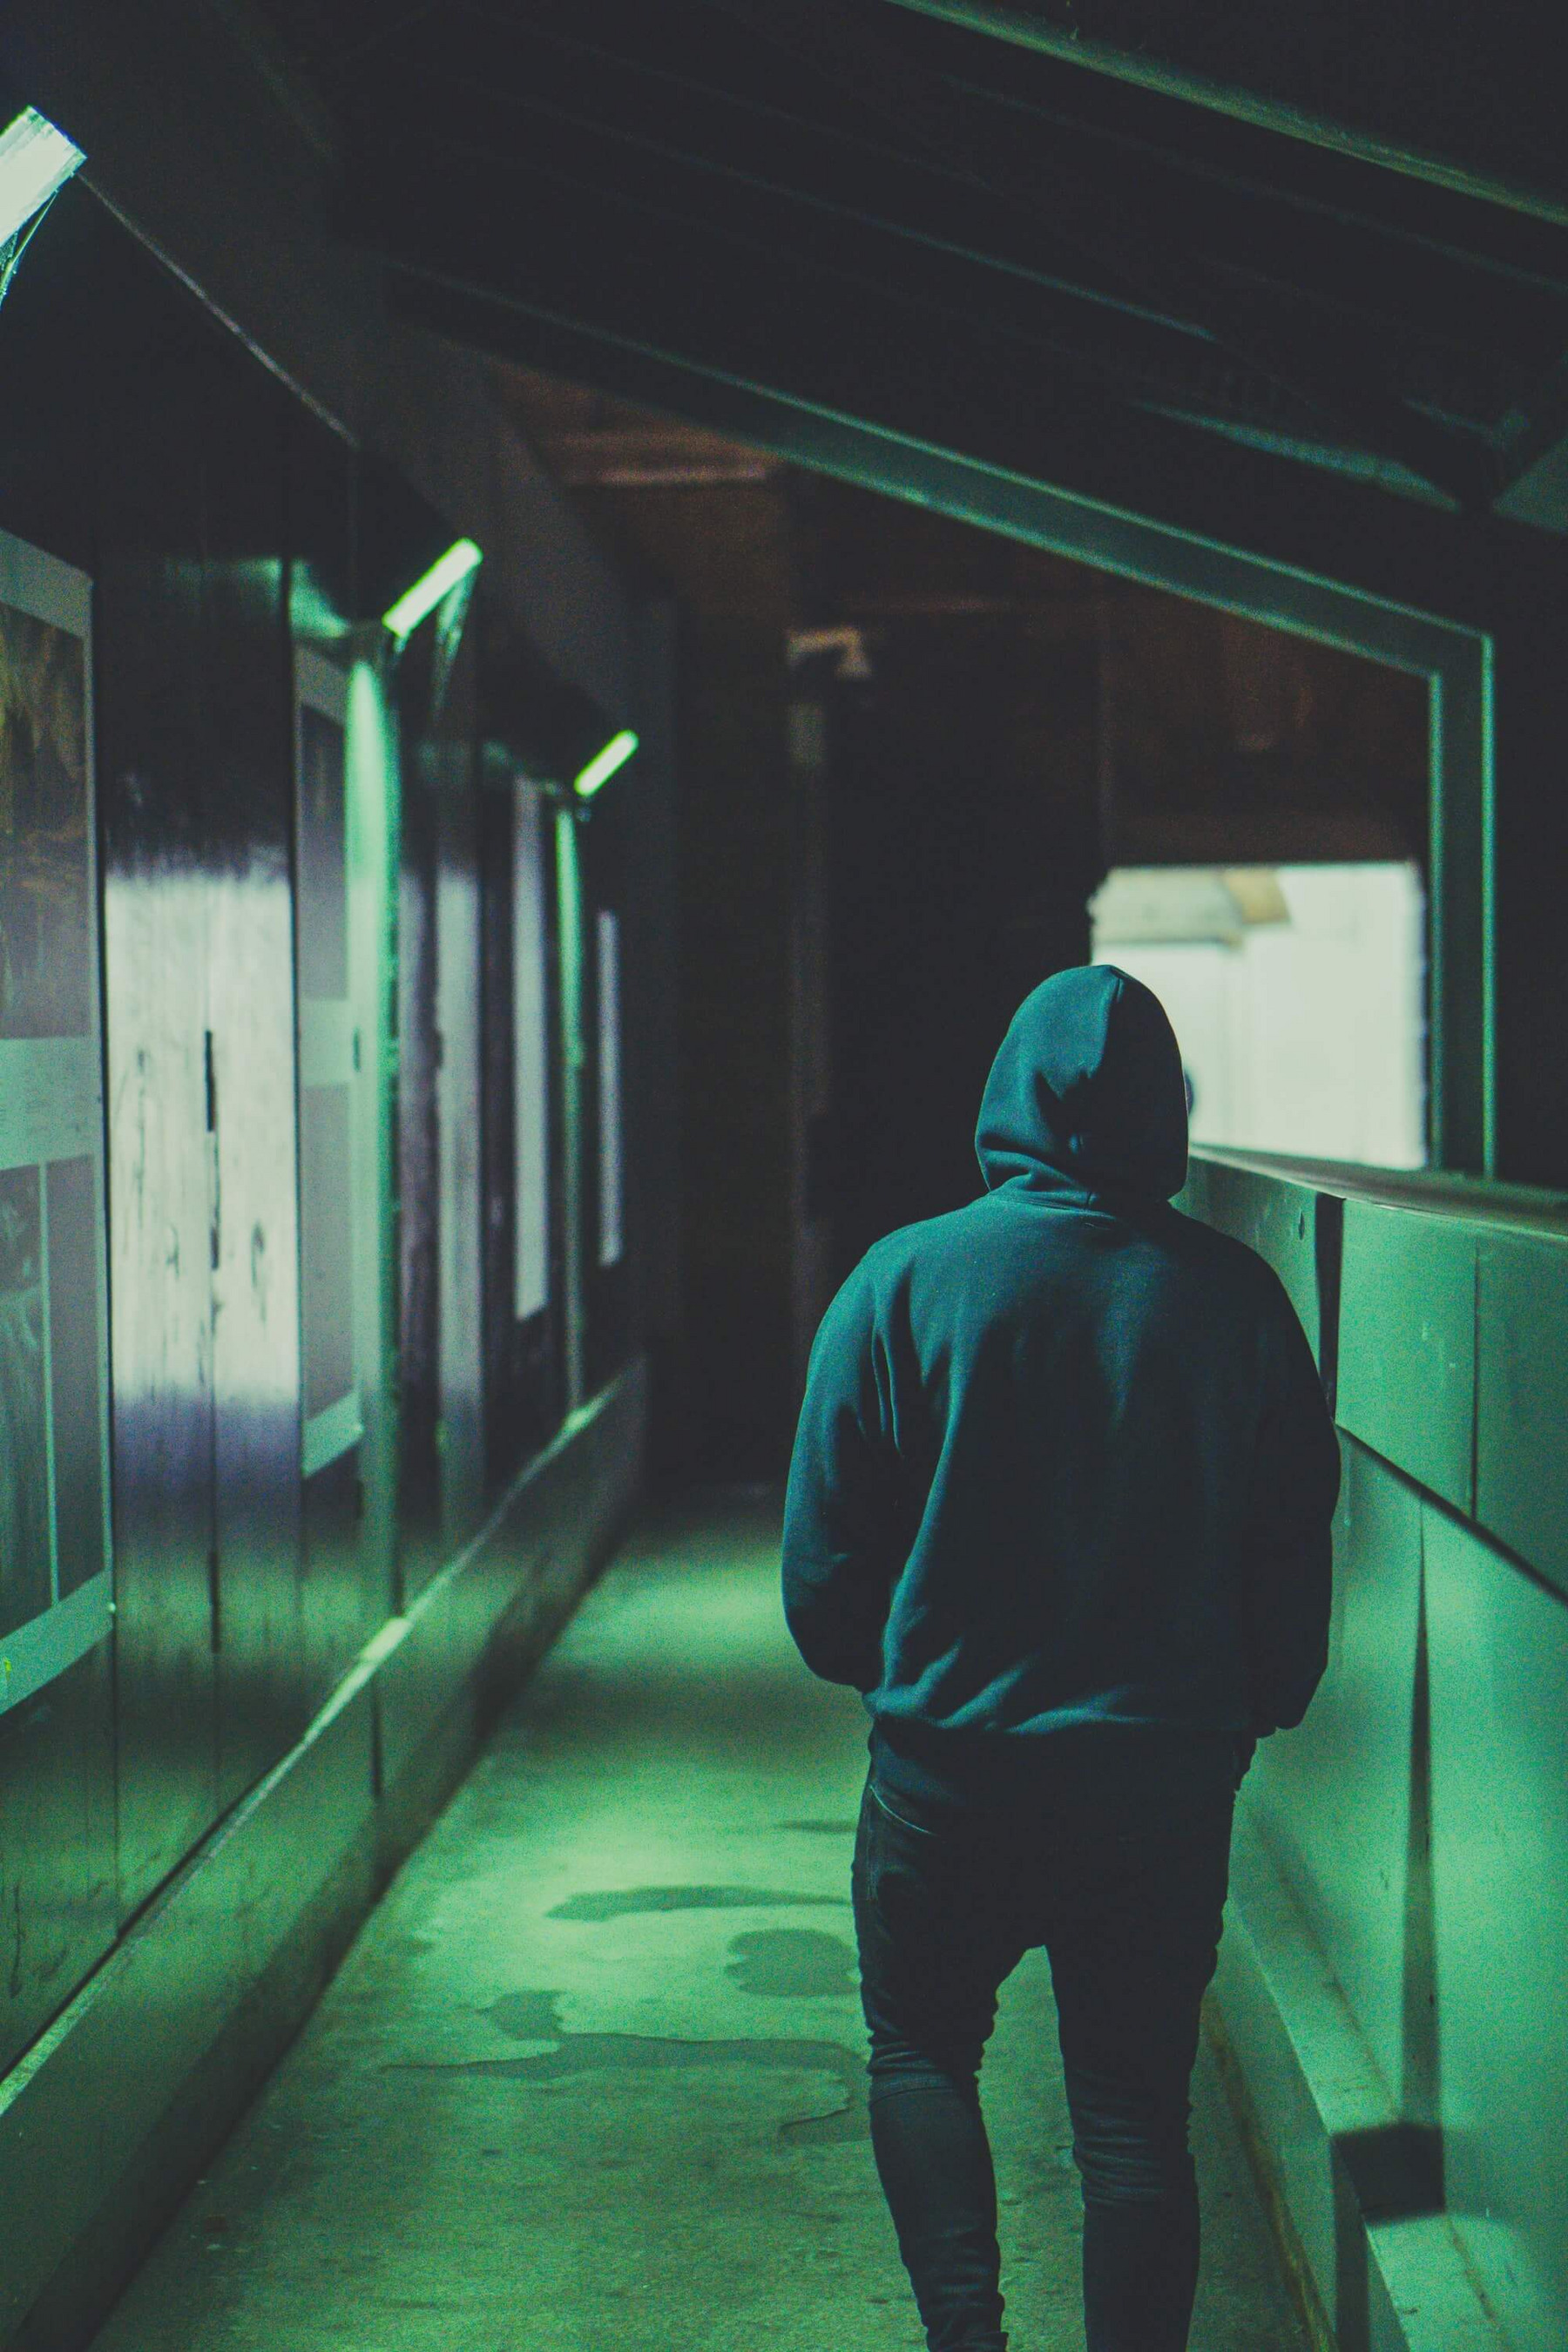 Ein junger Mensch hat sich die Kapuze seines Hoodies übergezogen und läuft vom künstlichen Licht der Lampen beschienen durch einen Bahnhof